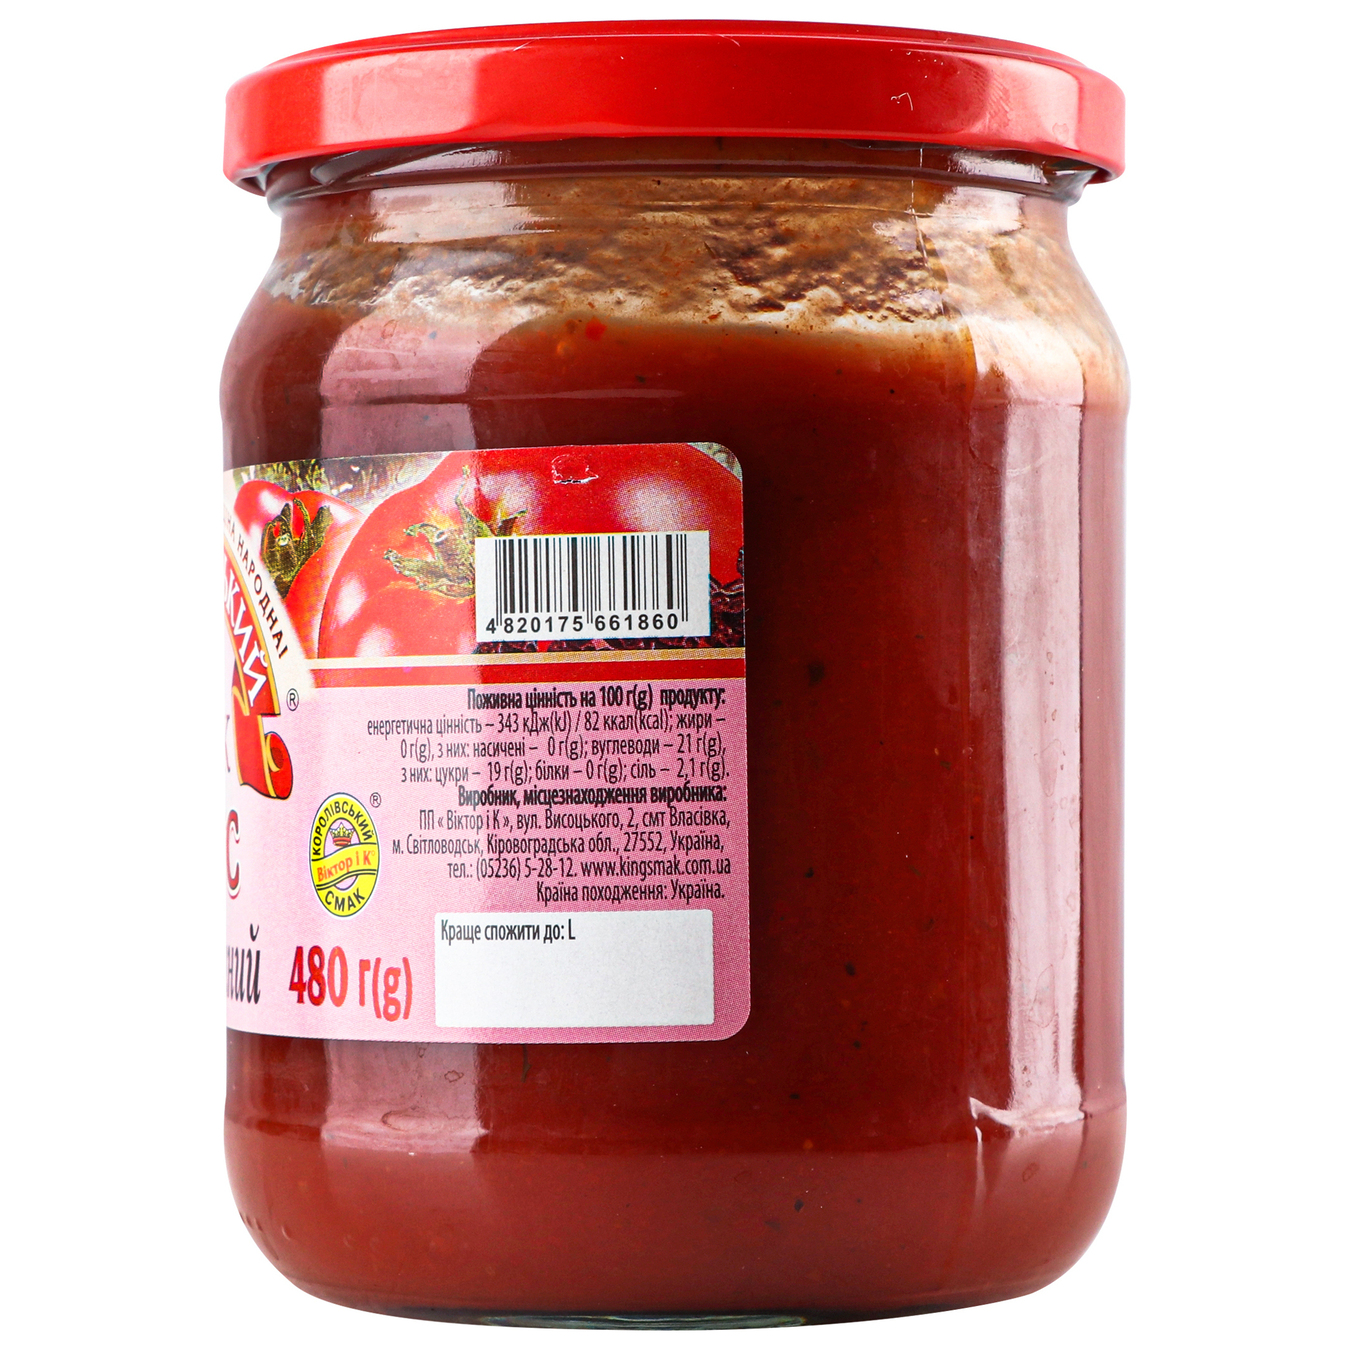 Tomato sauce Royal flavor Kebab 480g 5